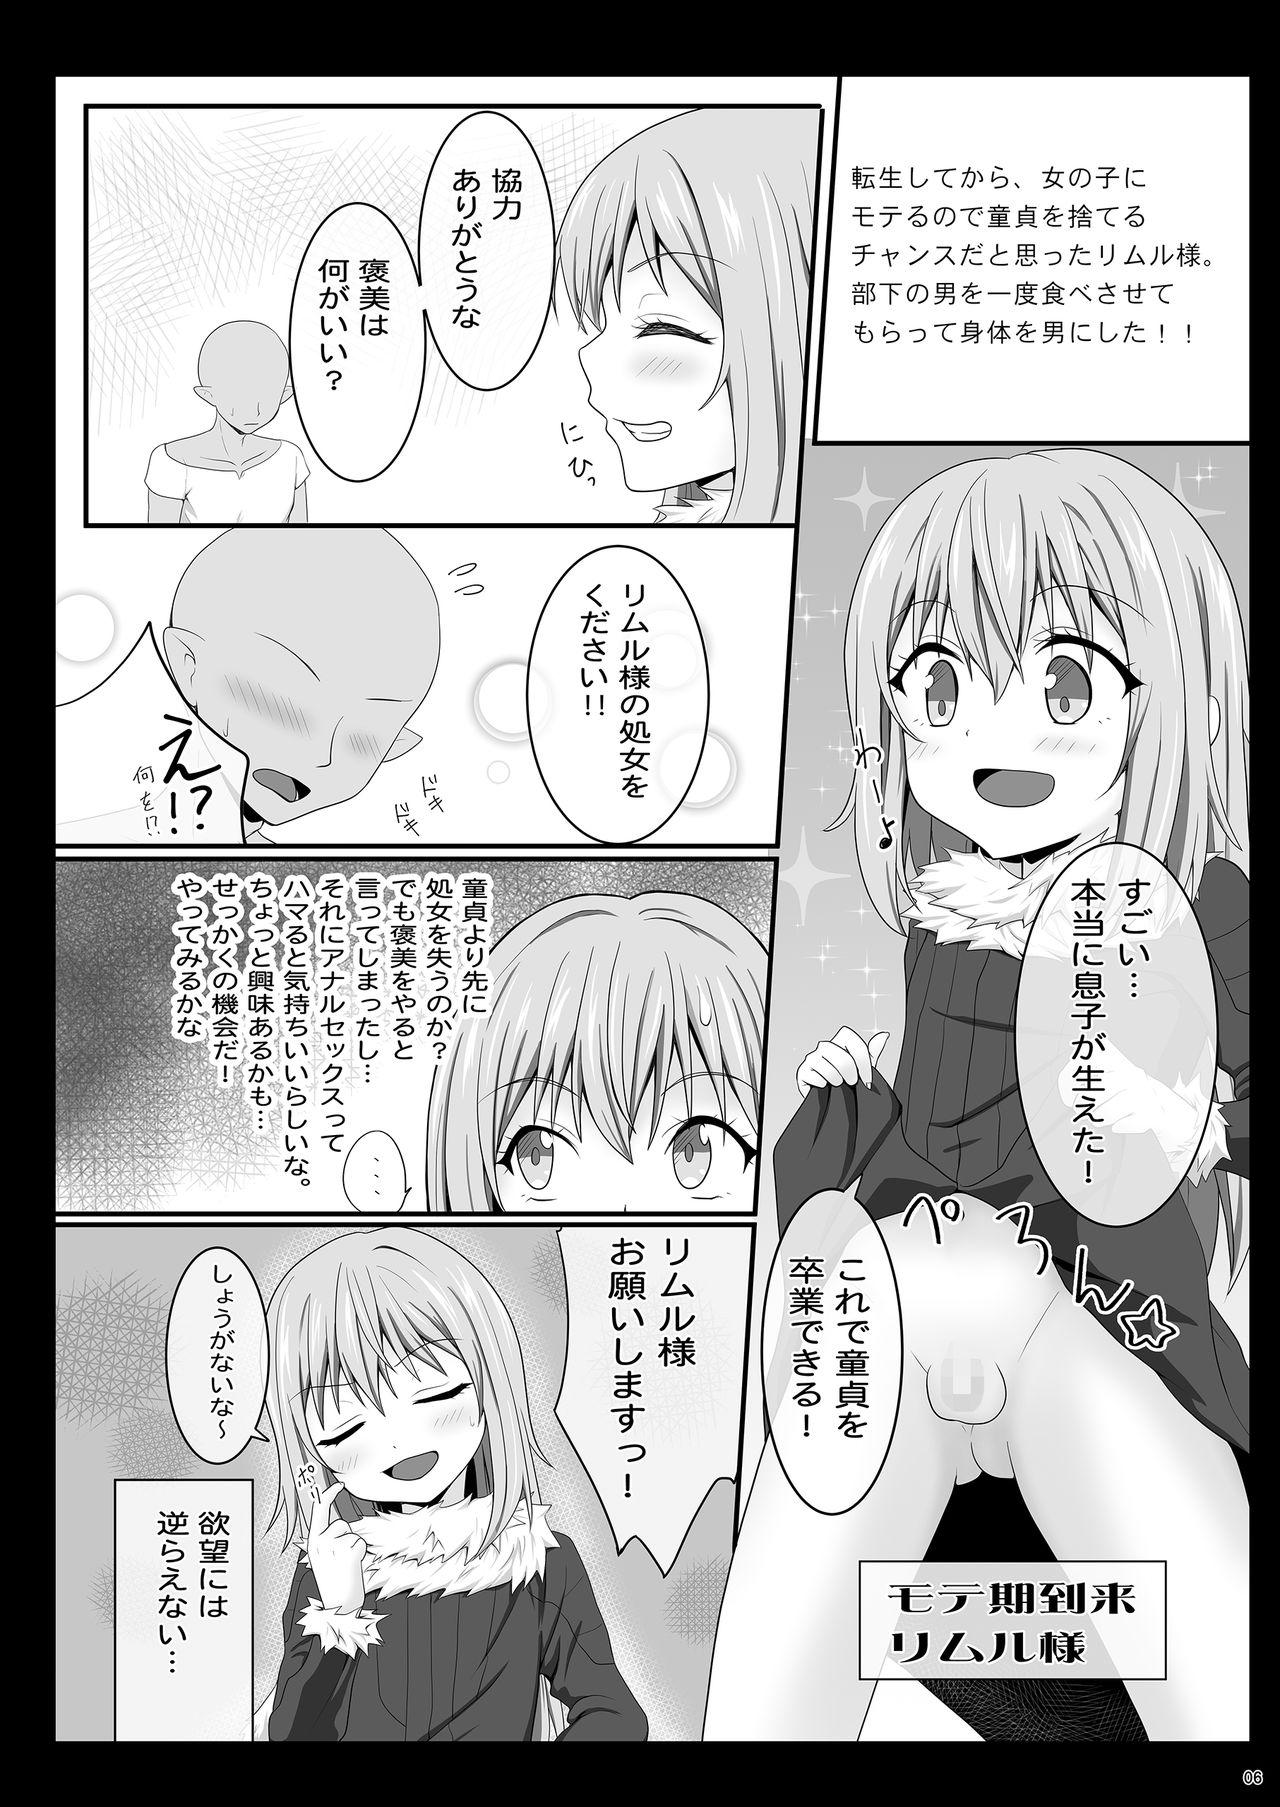 Perra Etchina Rimuru-sama No Matome - Tensei shitara slime datta ken Girl Fucked Hard - Page 5